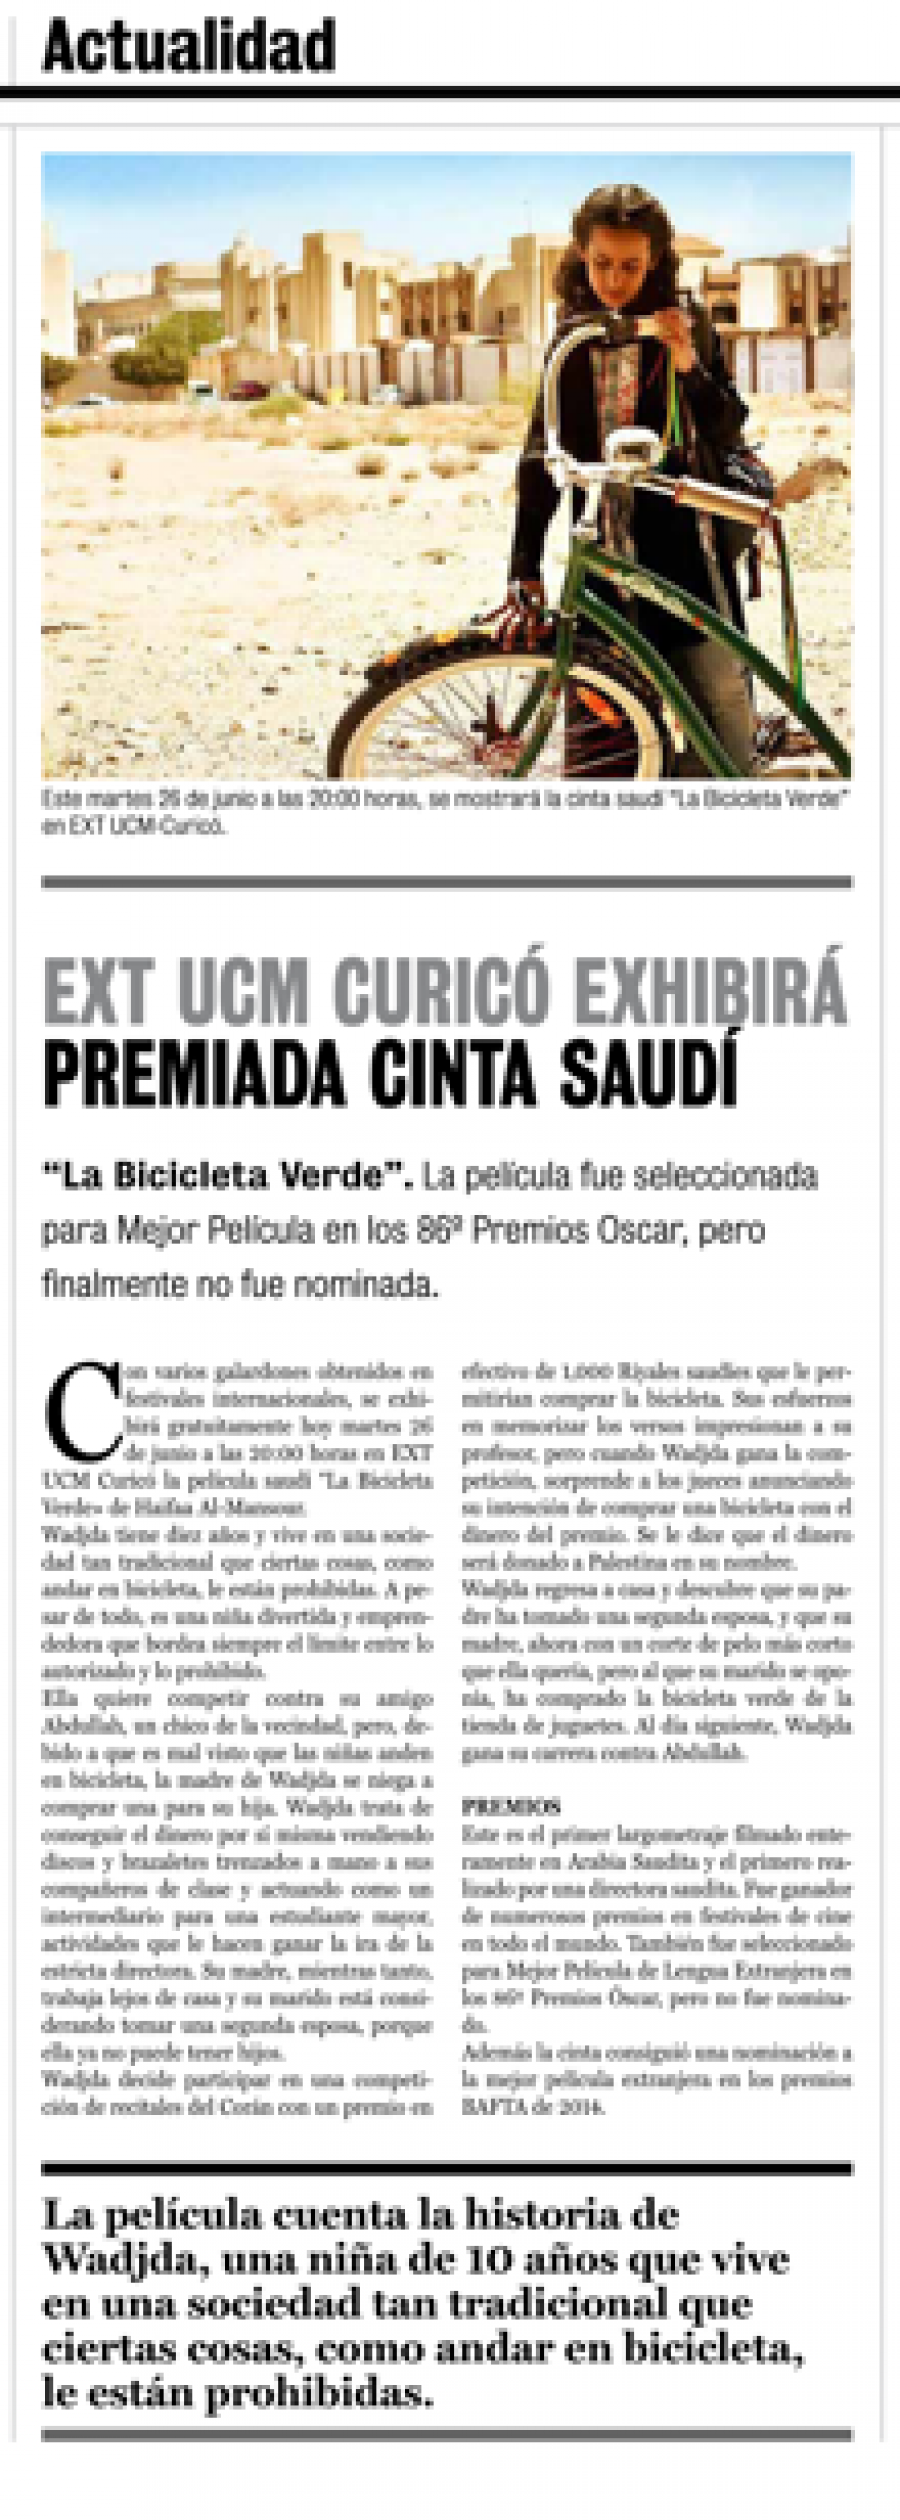 26 de junio en Diario La Prensa: “EXT UCM Curicó exhibirá premiada cinta saudí”